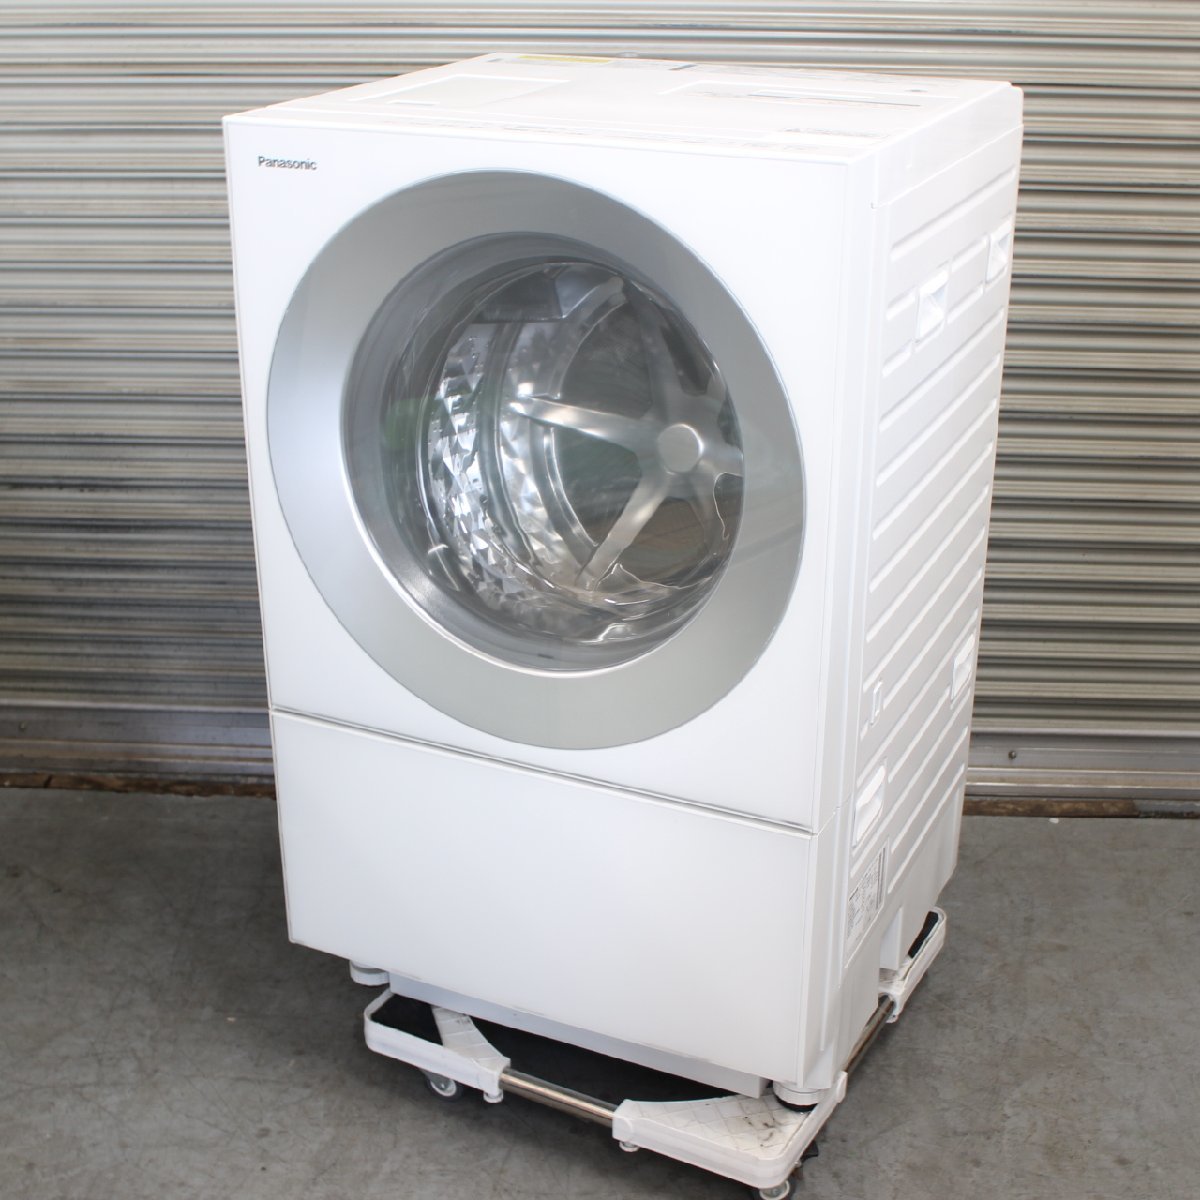 東京都杉並区にて パナソニック ドラム式洗濯機 NA-VG700L 2015年製 を出張買取させて頂きました。